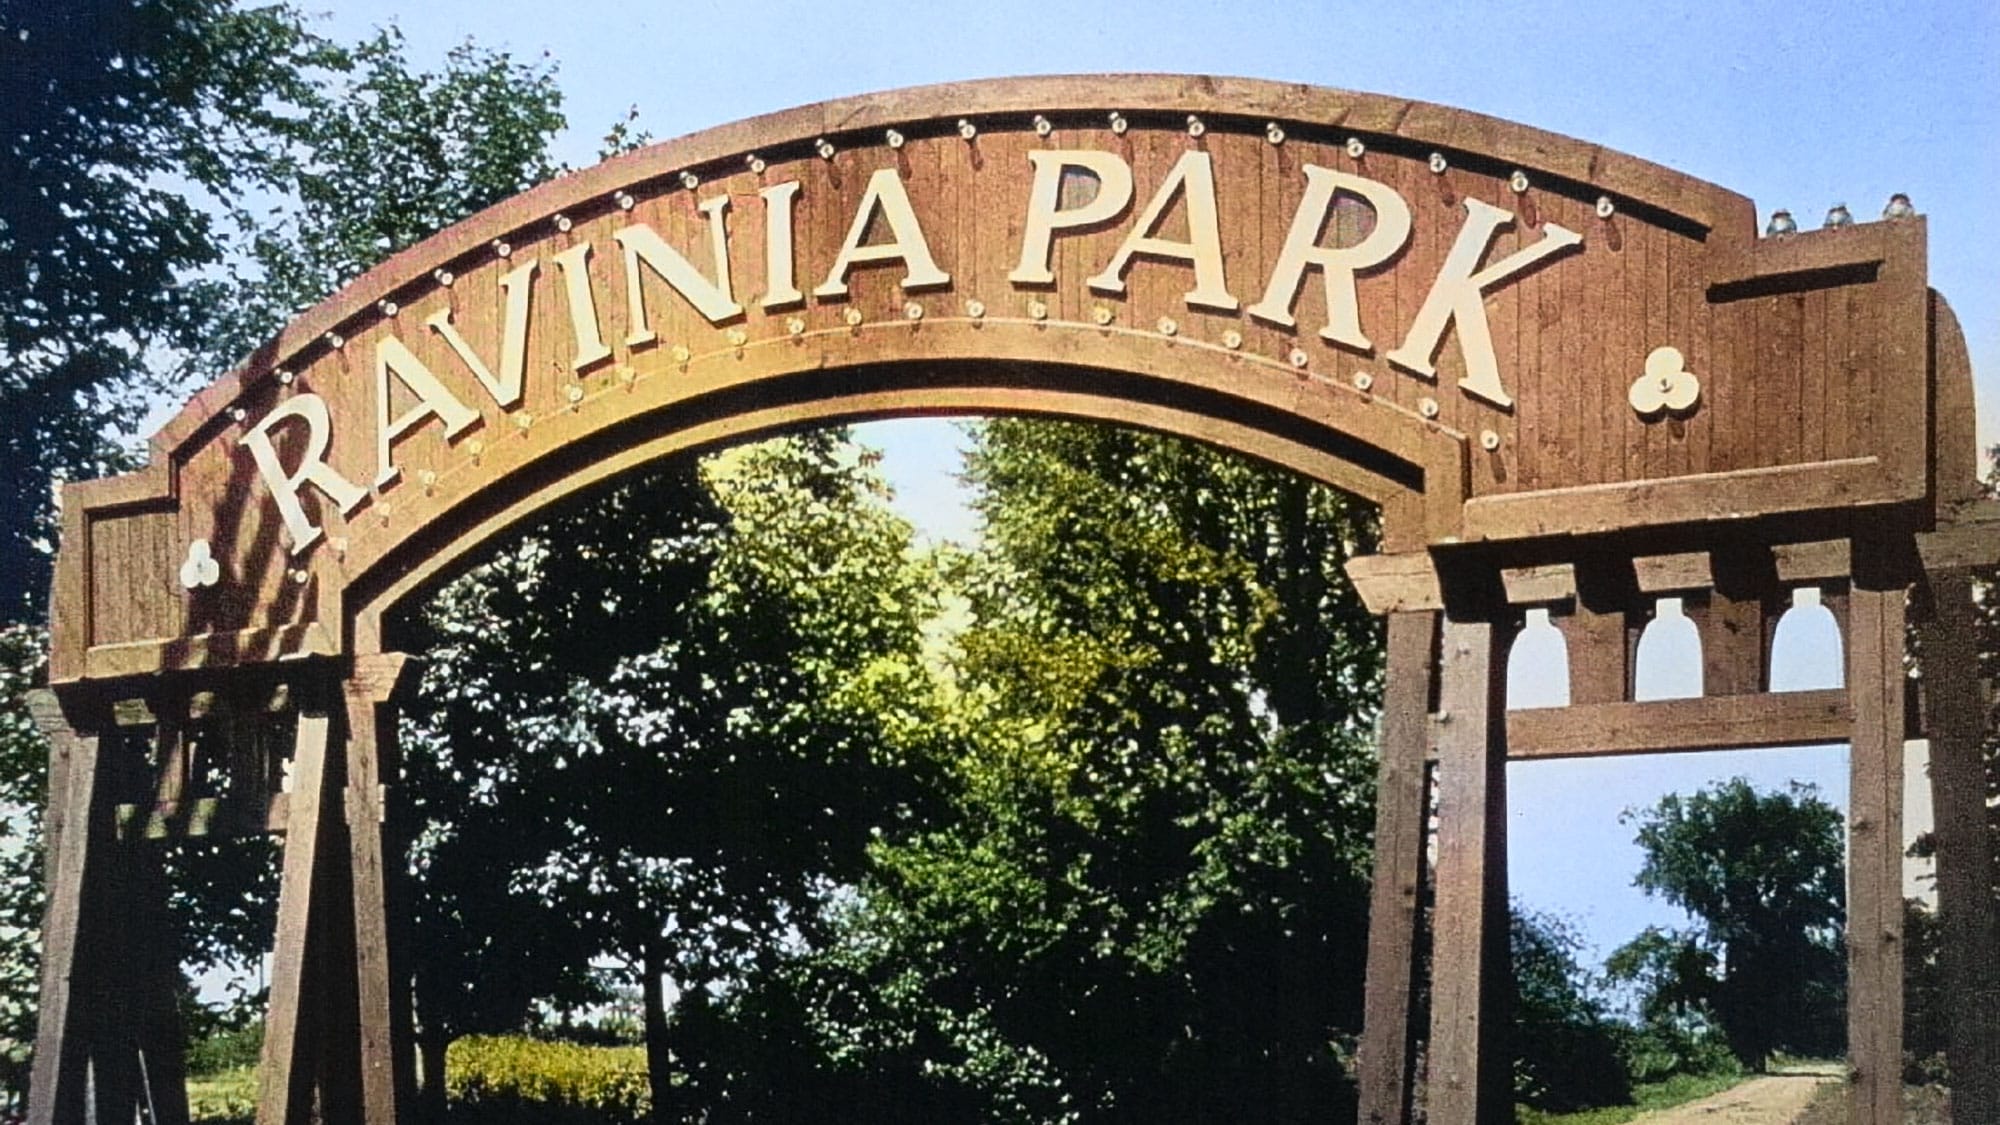 Vintage image of sign for Ravinia Park